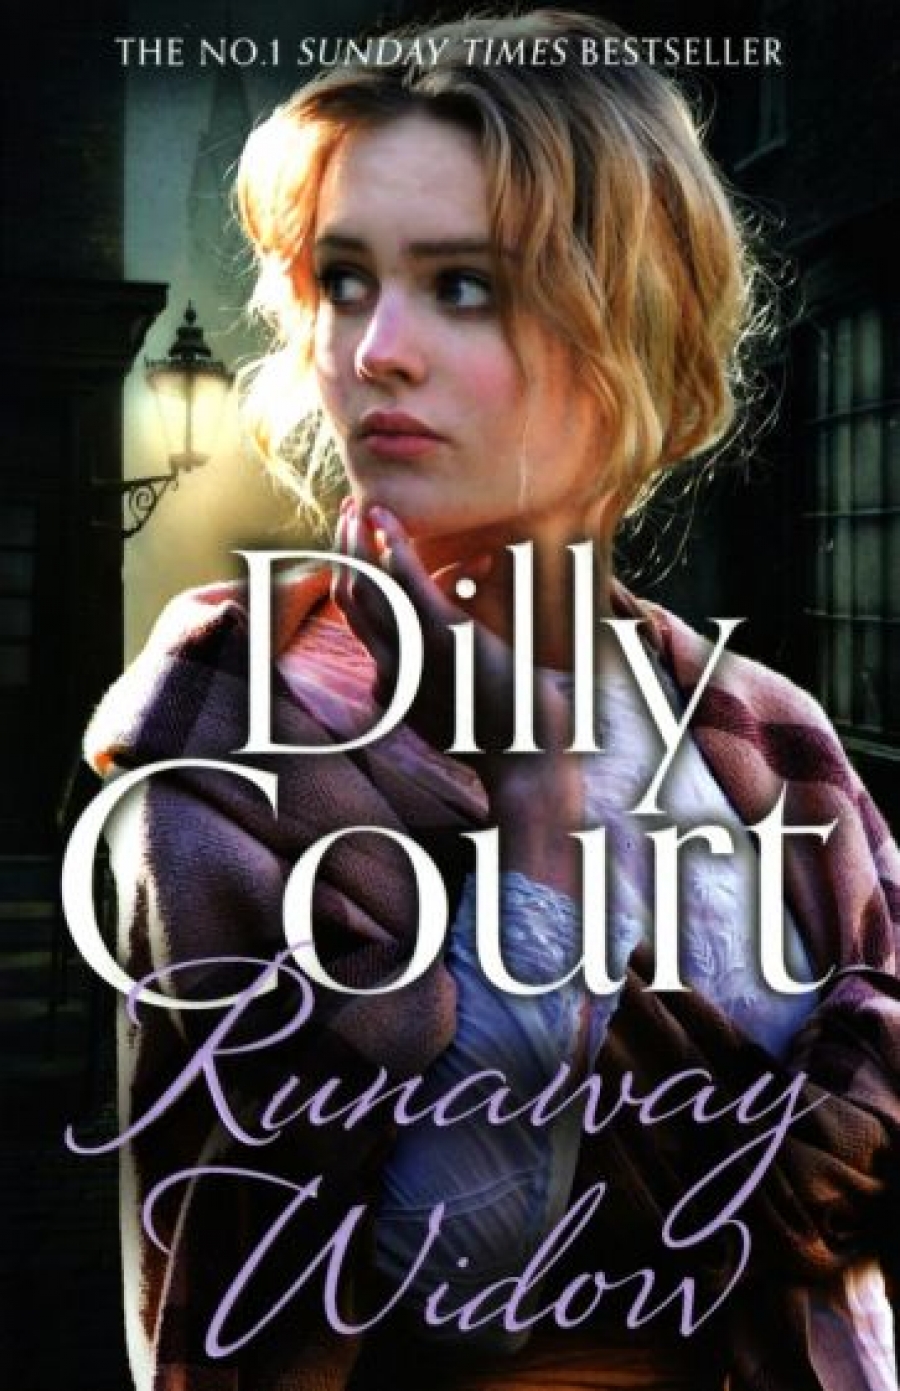 Court Dilly Runaway Widow 